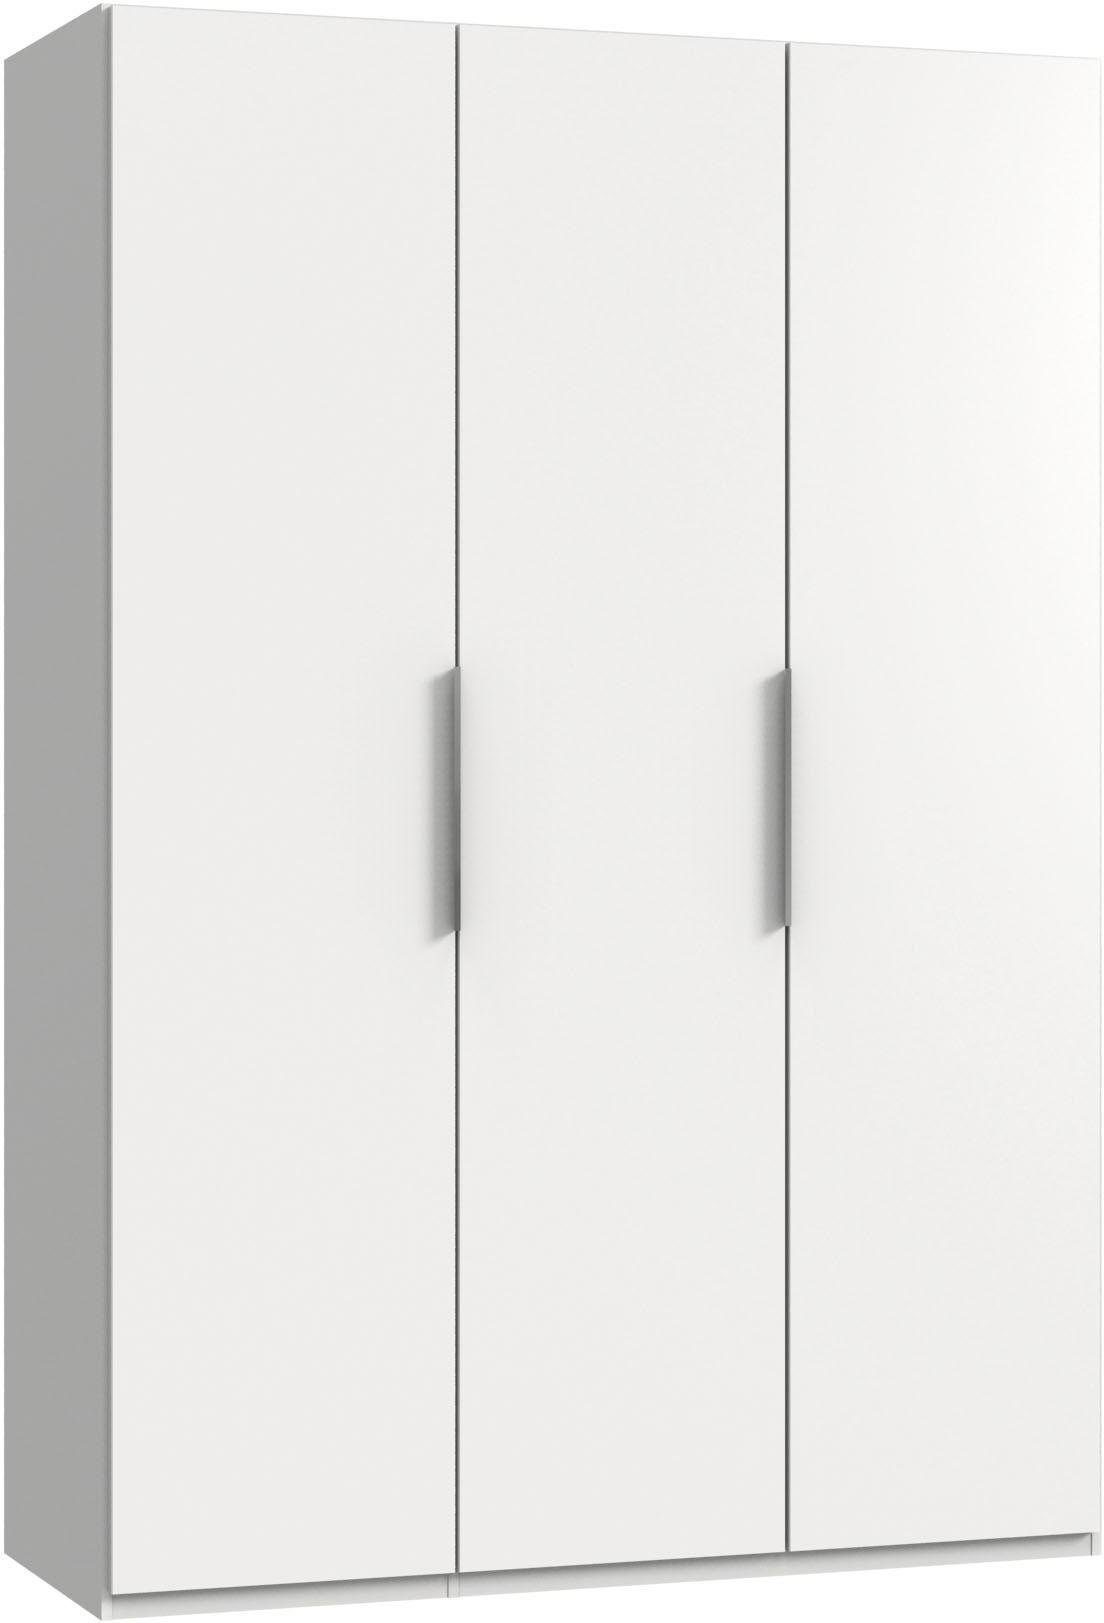 Wimex Kleiderschrank Level (Level, Kleiderschrank) 3-türig 150x58x216cm weiß